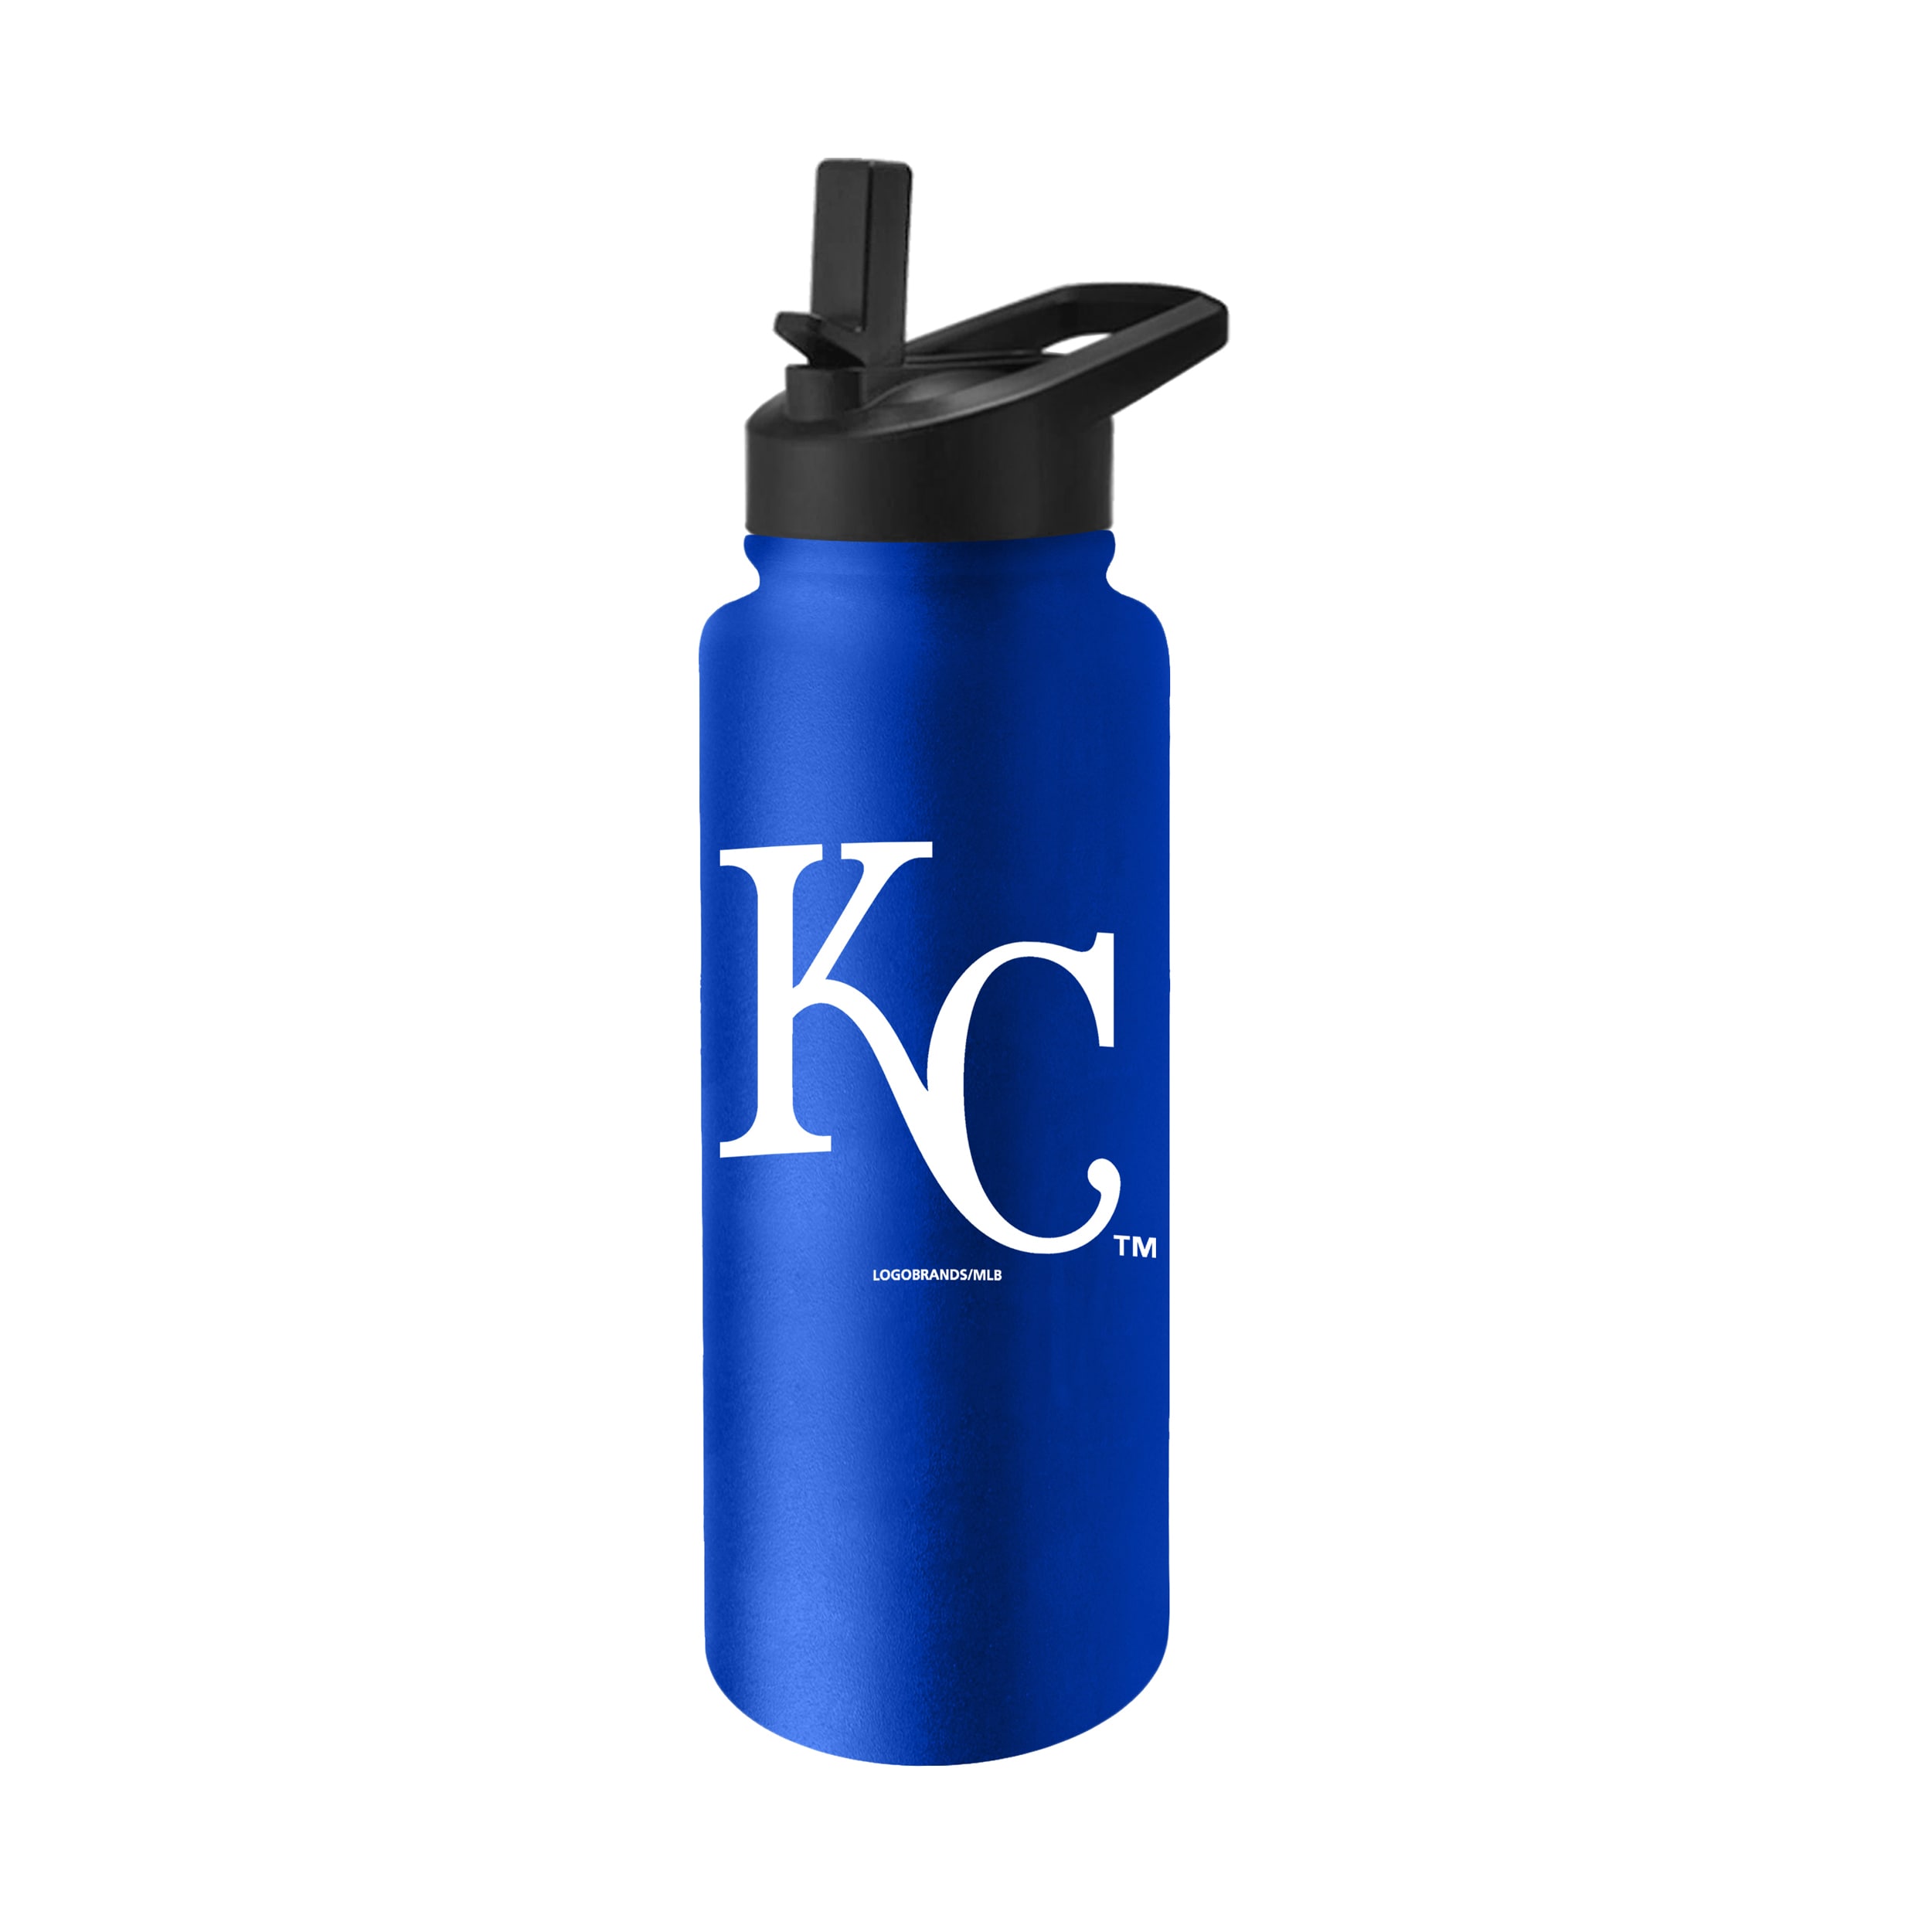 Kansas City Royals Macho Mug